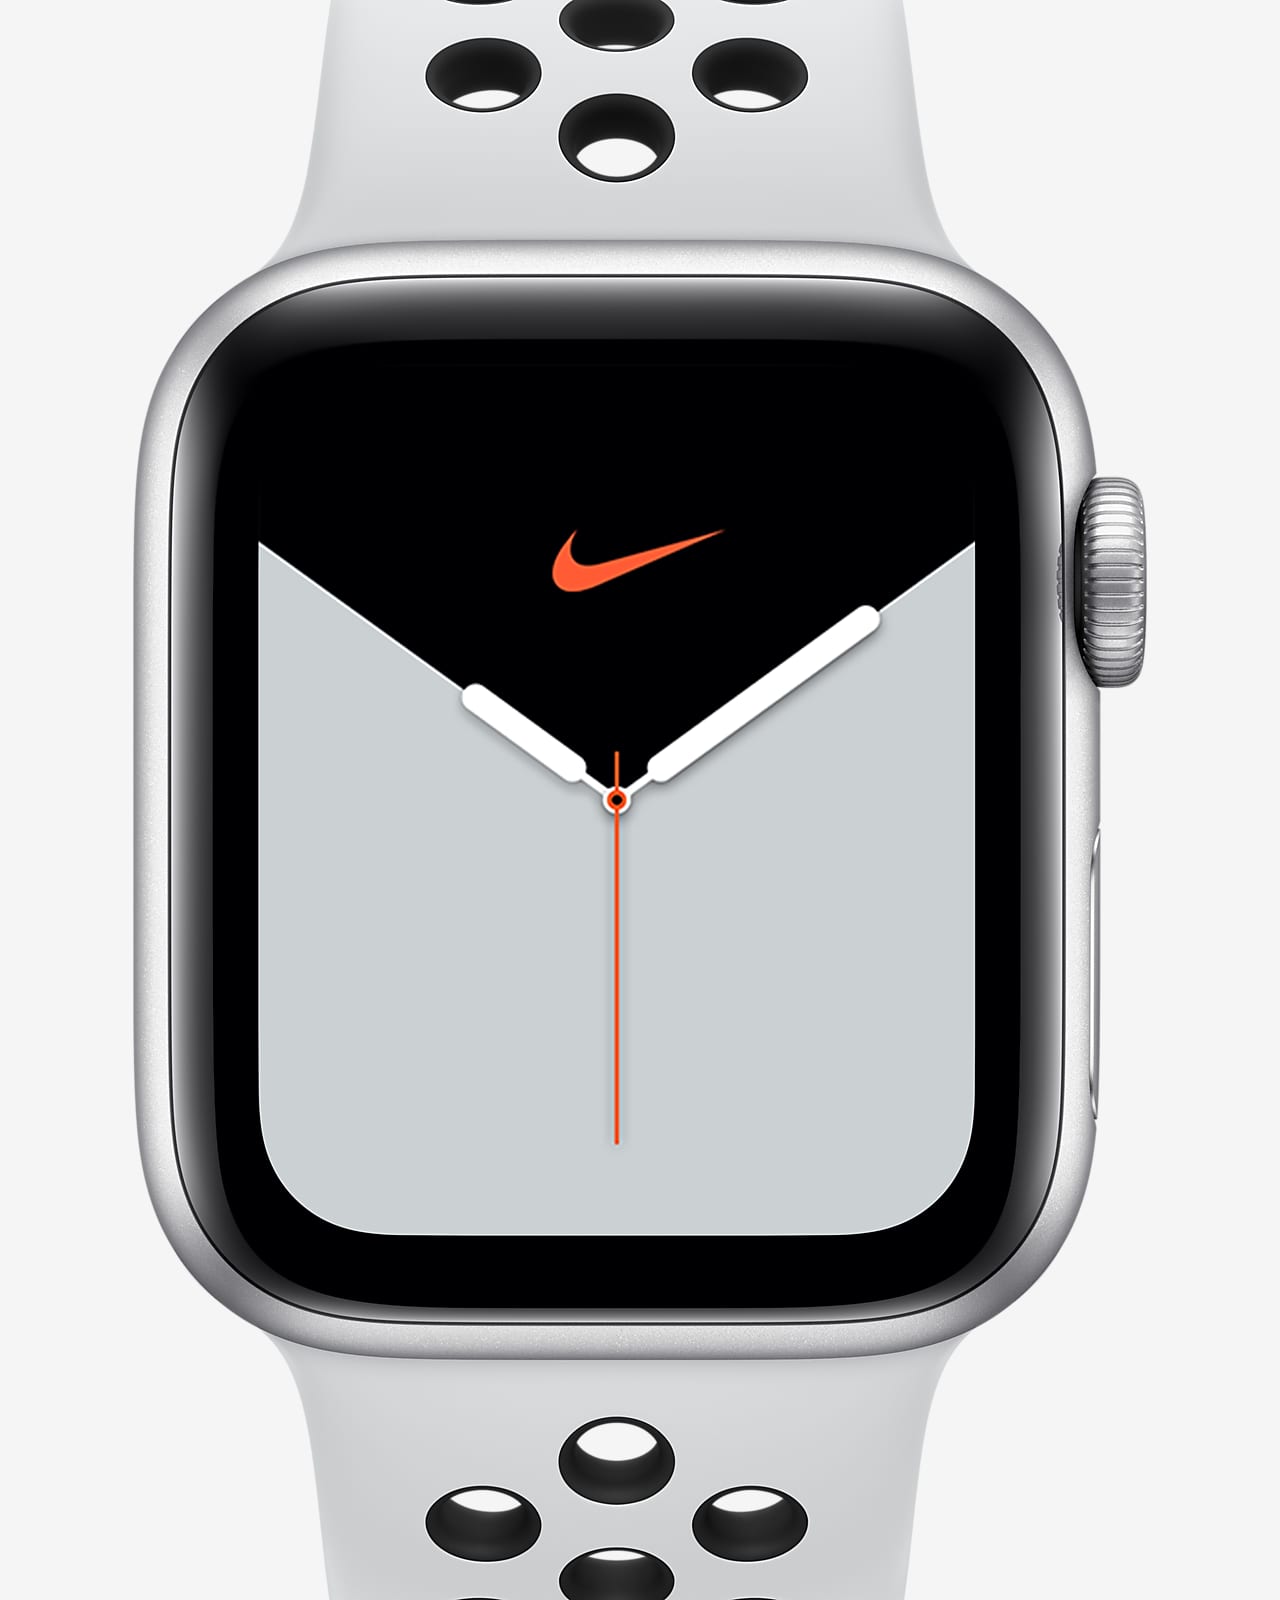 Apple Watch Nike Series 5 (GPS) con Nike Sport Band Open Box e cassa in alluminio color argento – 40 mm